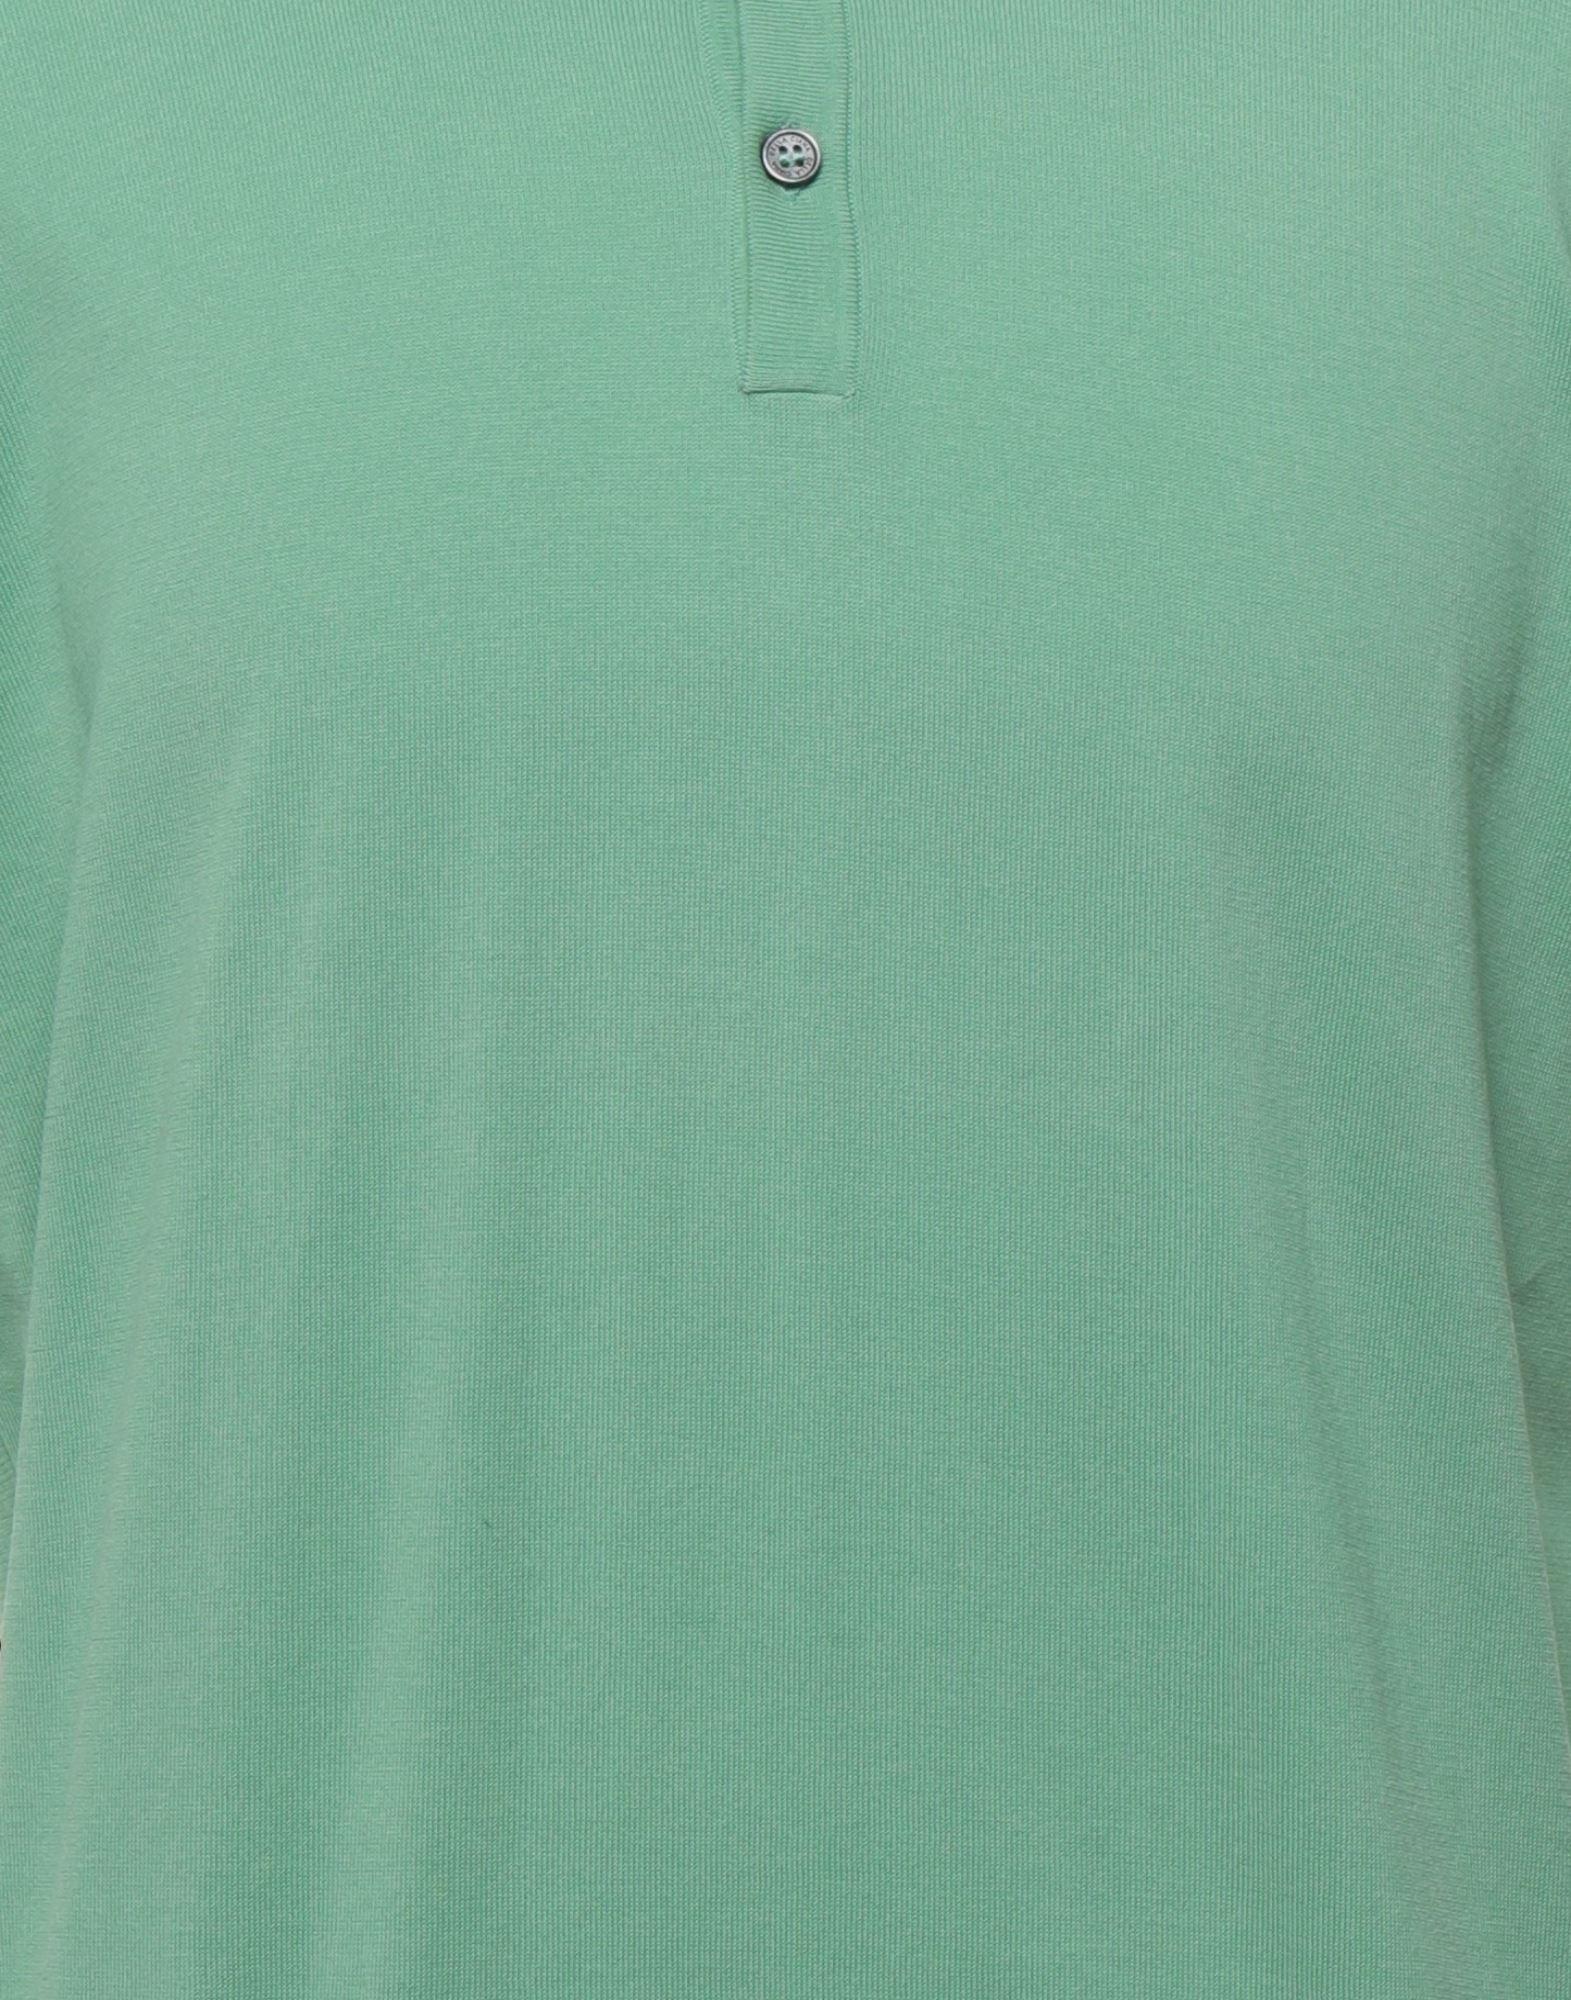 Della Ciana Mens 814339037662 Green Cotton Polo Shirt